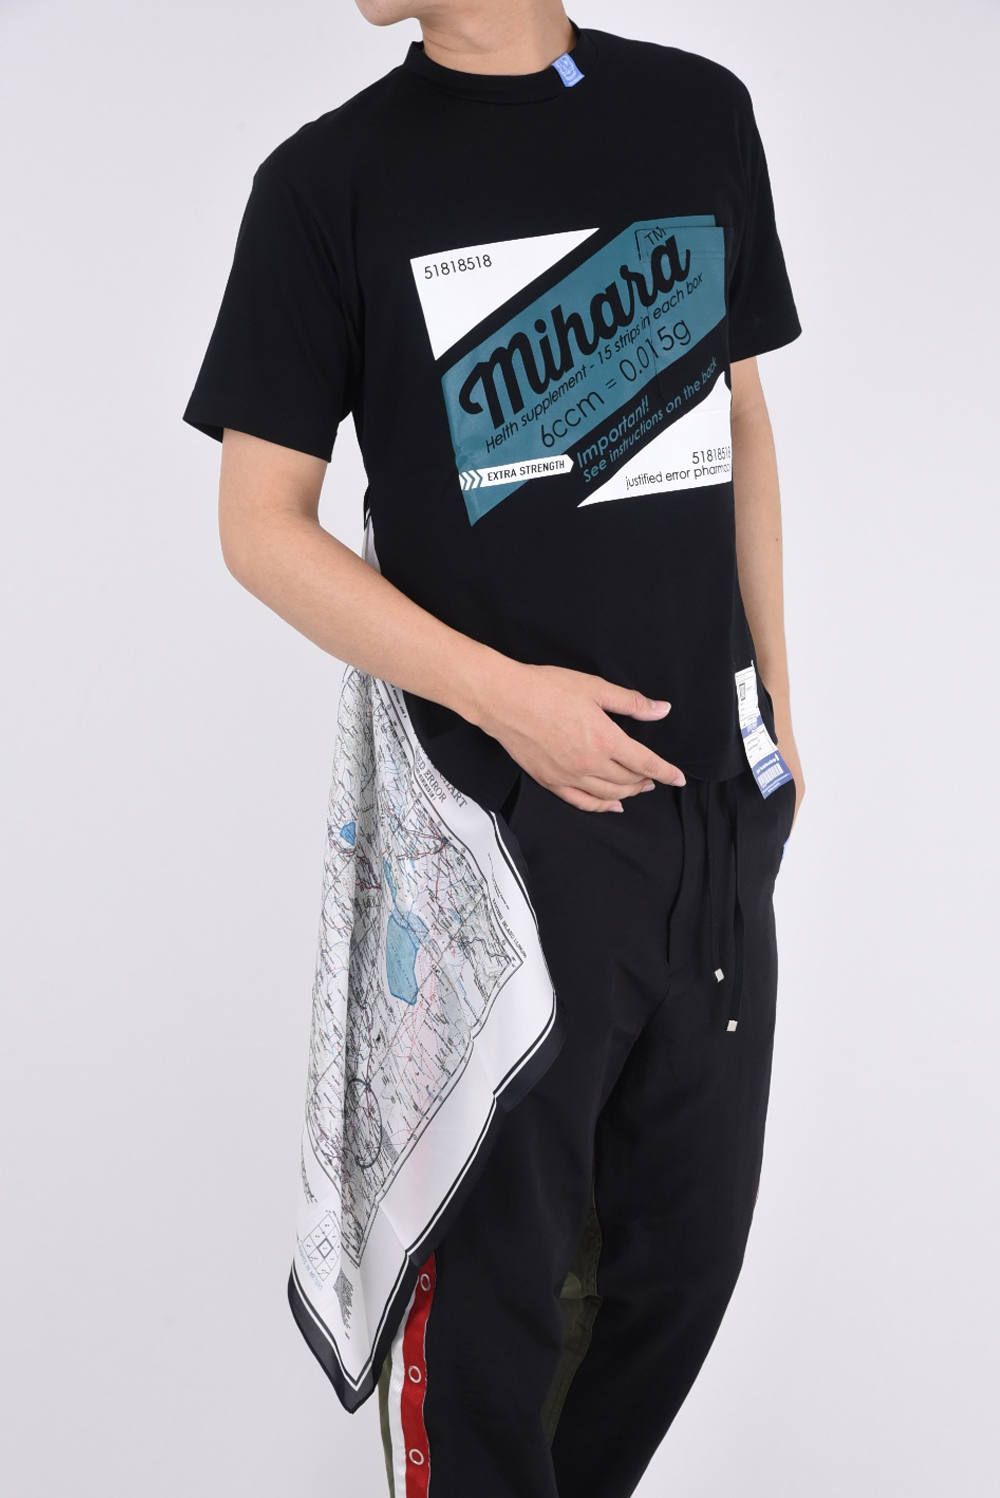 超特価SALE開催 Maison MIHARA YASUHIRO 19SS ドッキングTシャツ 